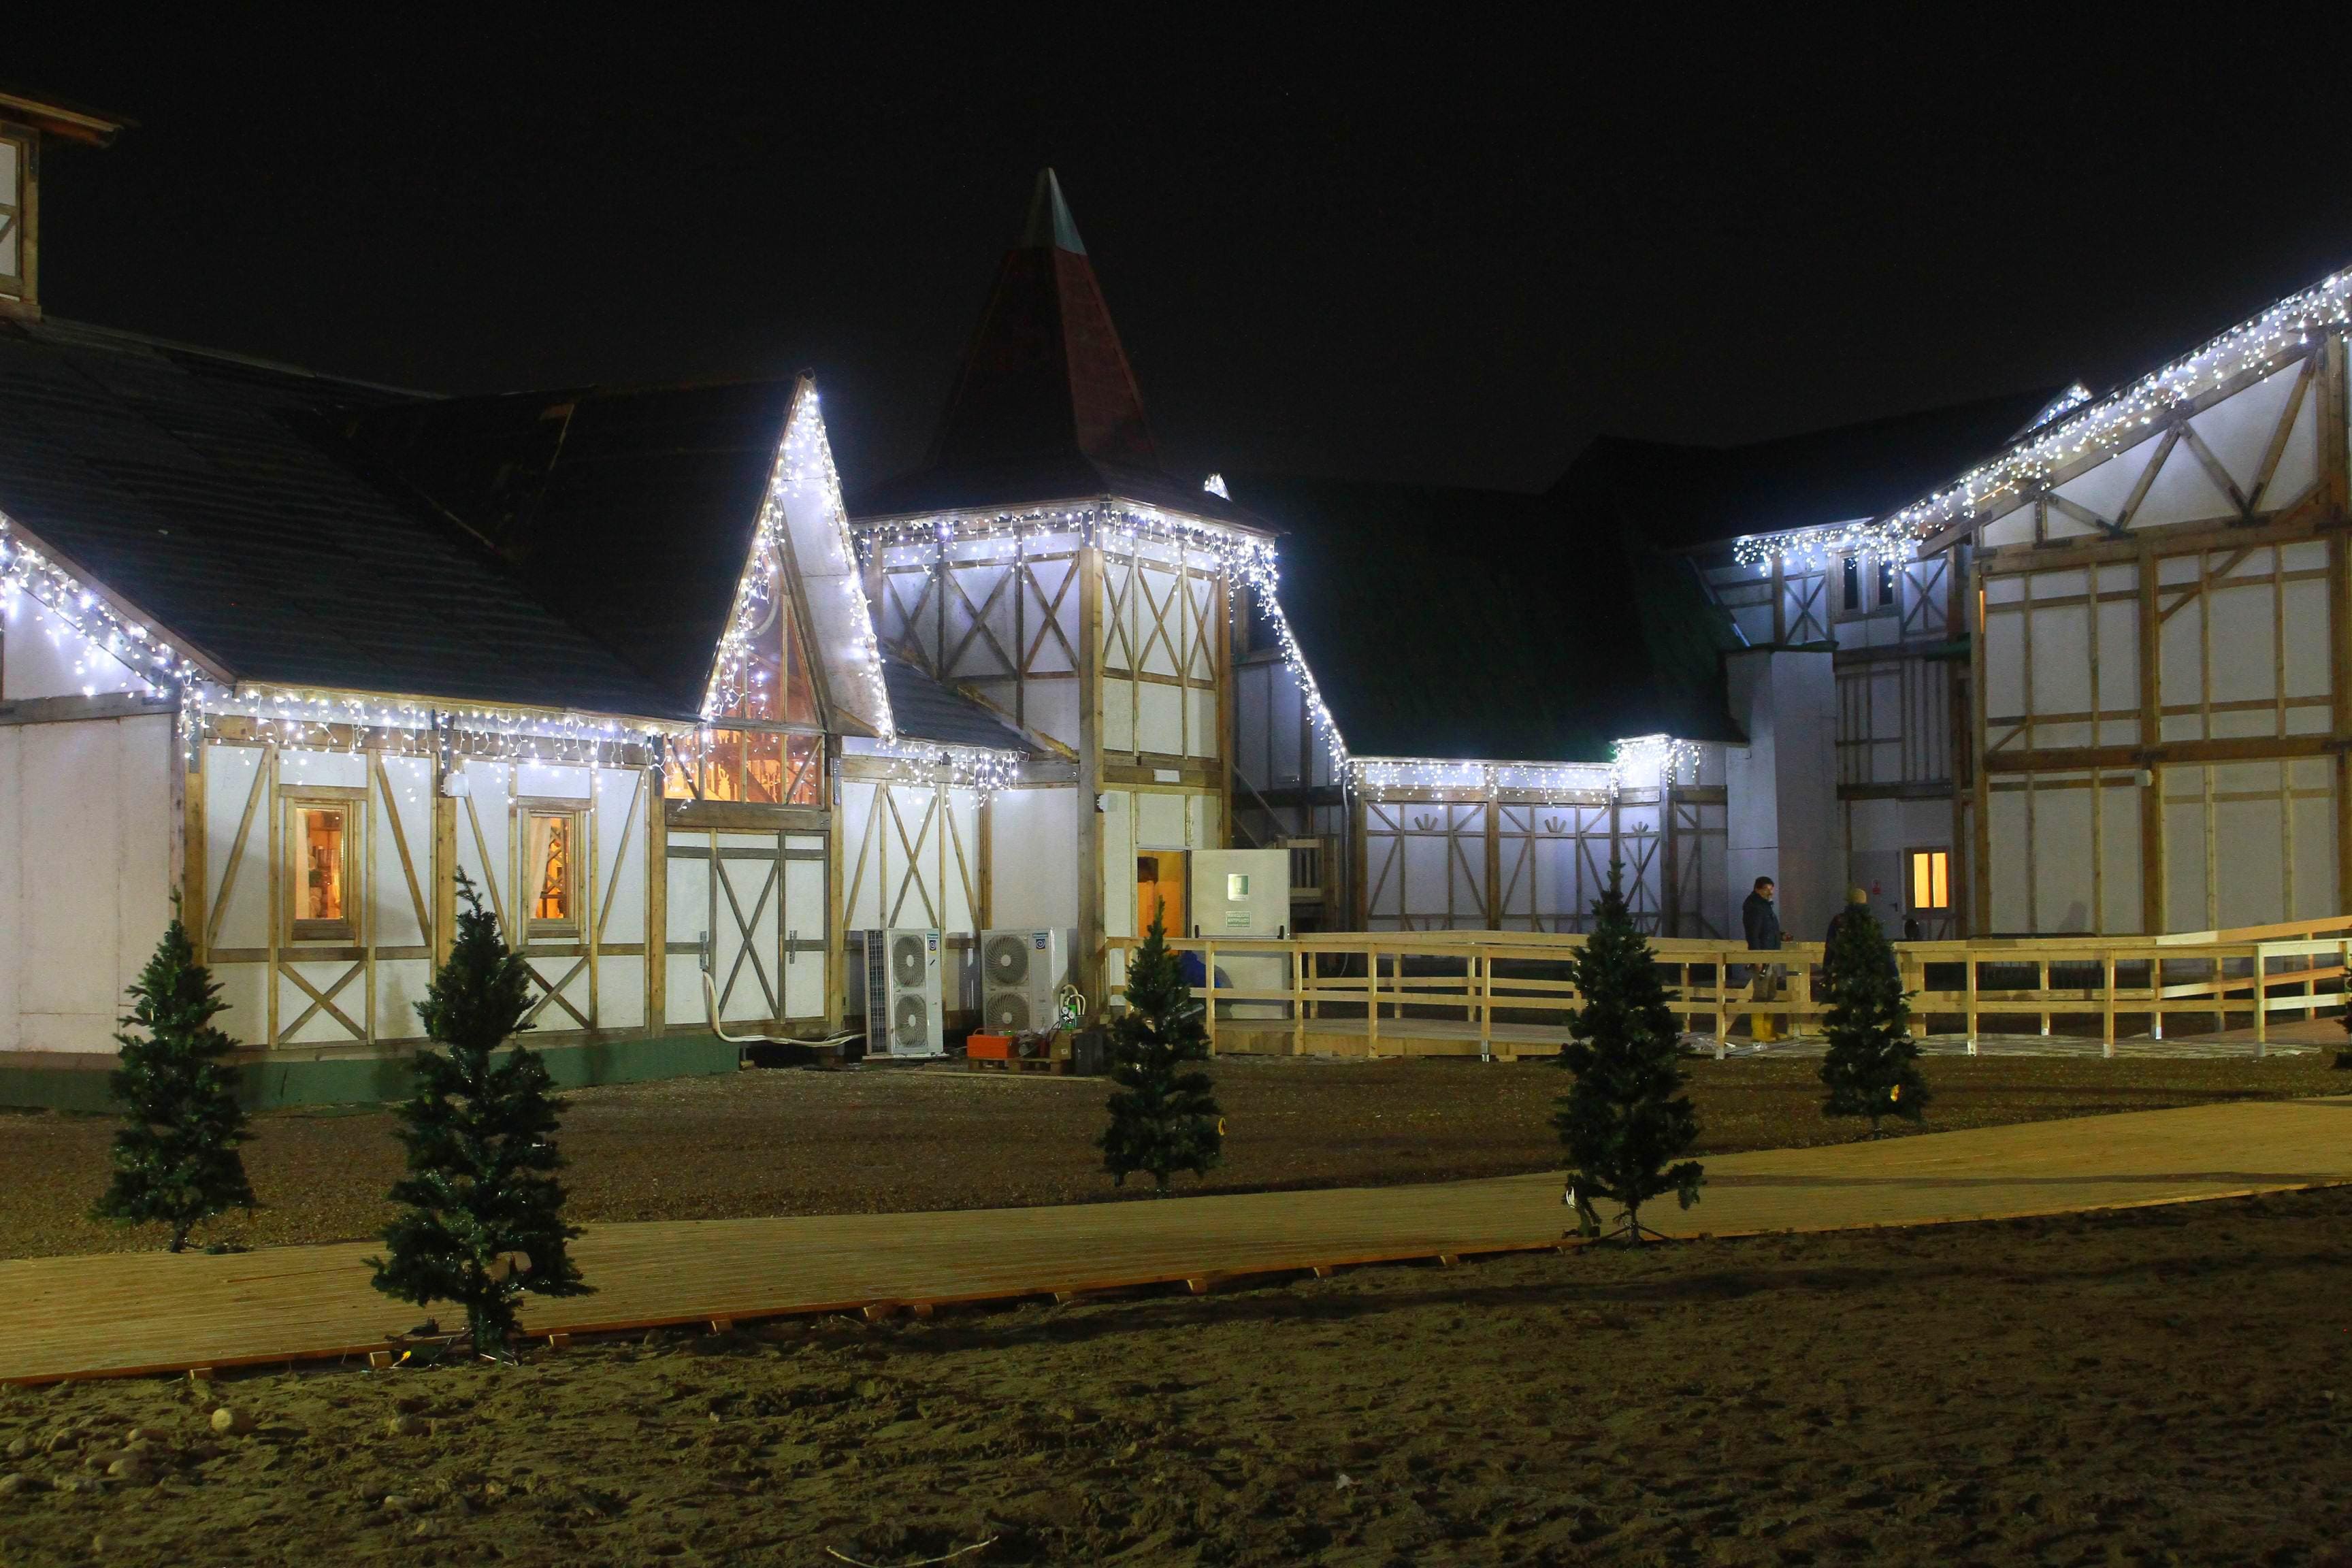 Villaggio Natale.Apre A Milano Il Sogno Del Natale Parco A Tema All Ippodromo San Siro Sky Tg24